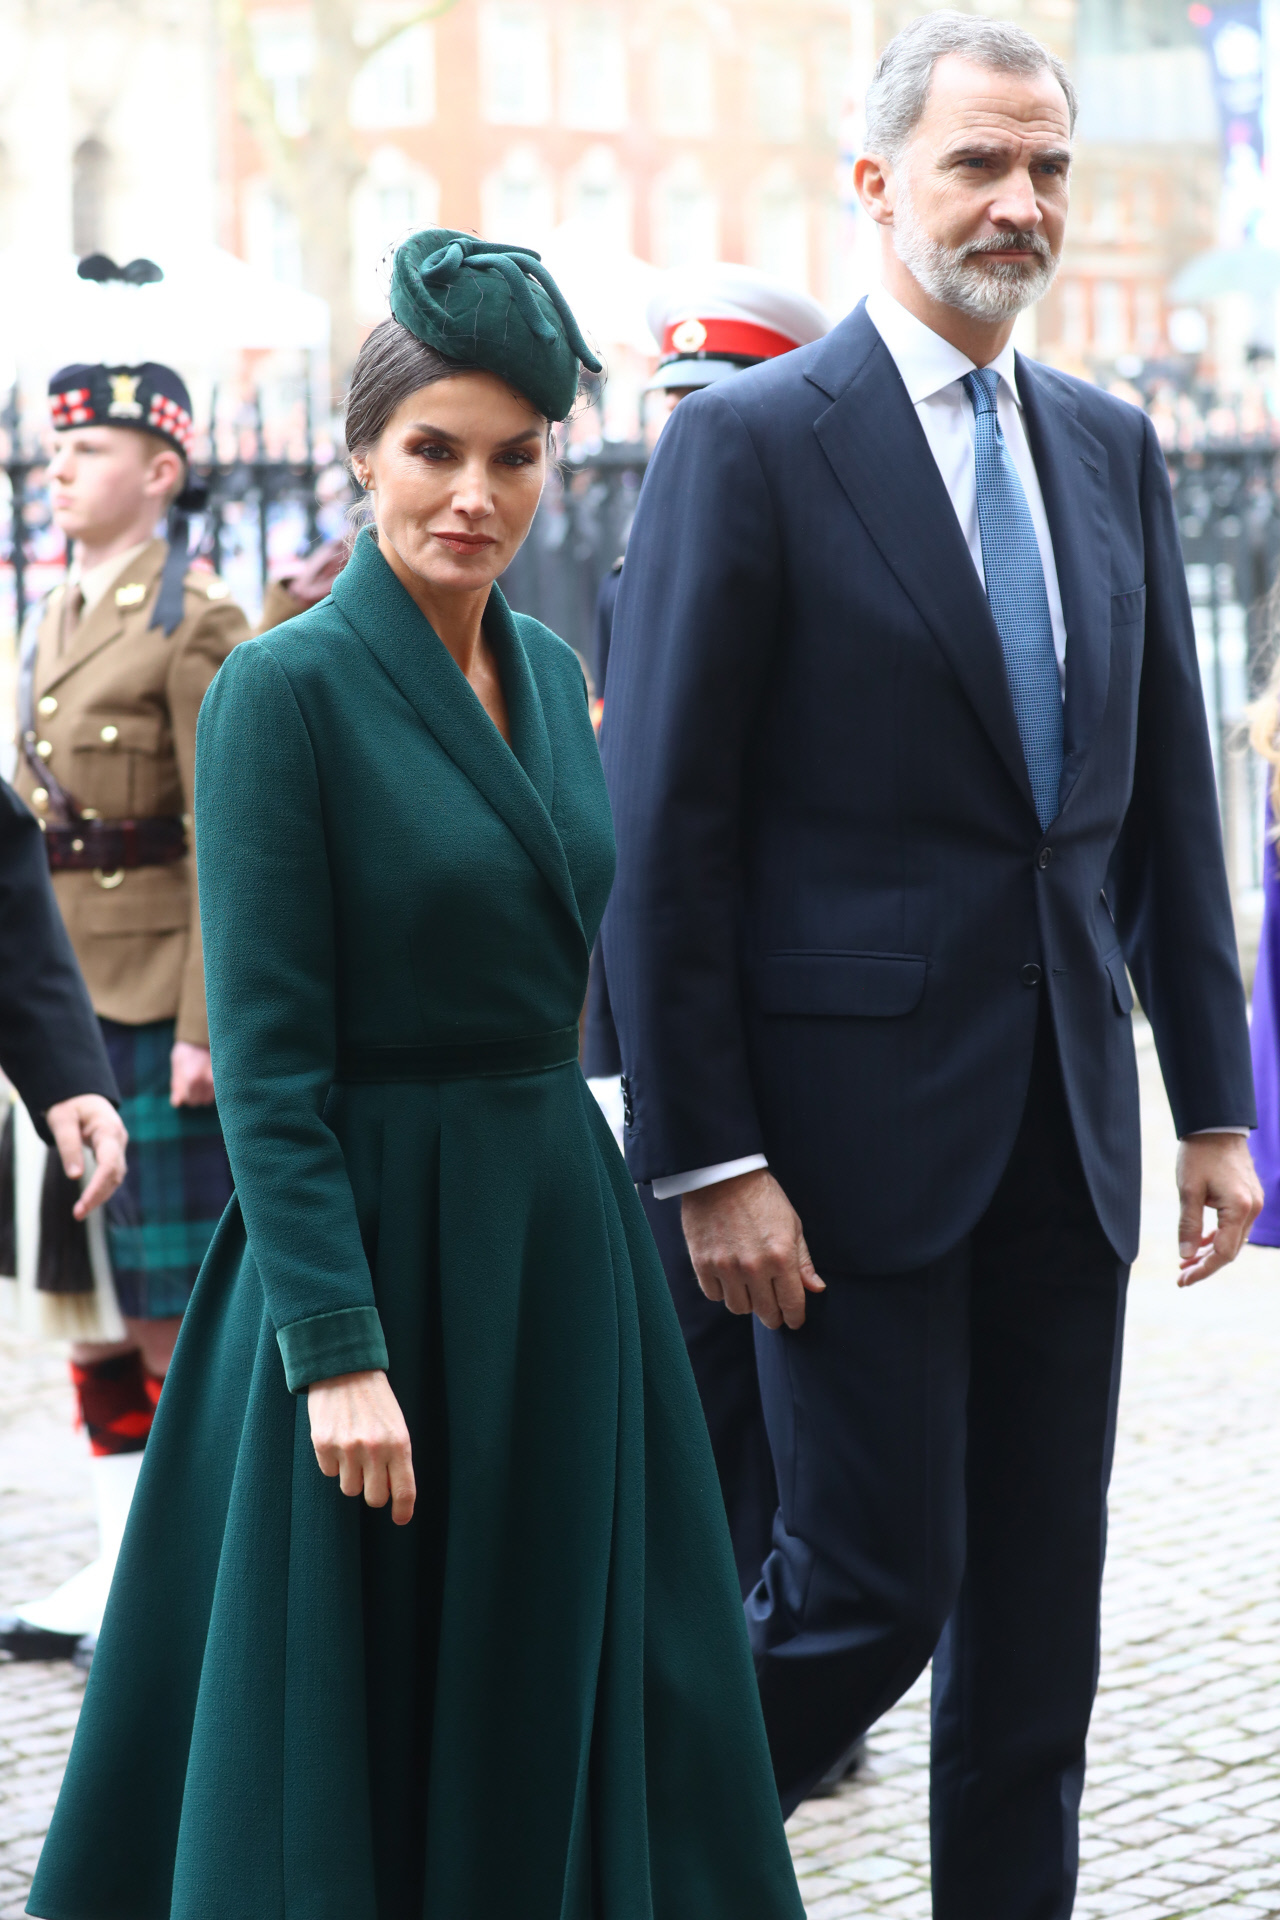 La reina Letizia y su elegante look en Londres, de verde y con tocado.